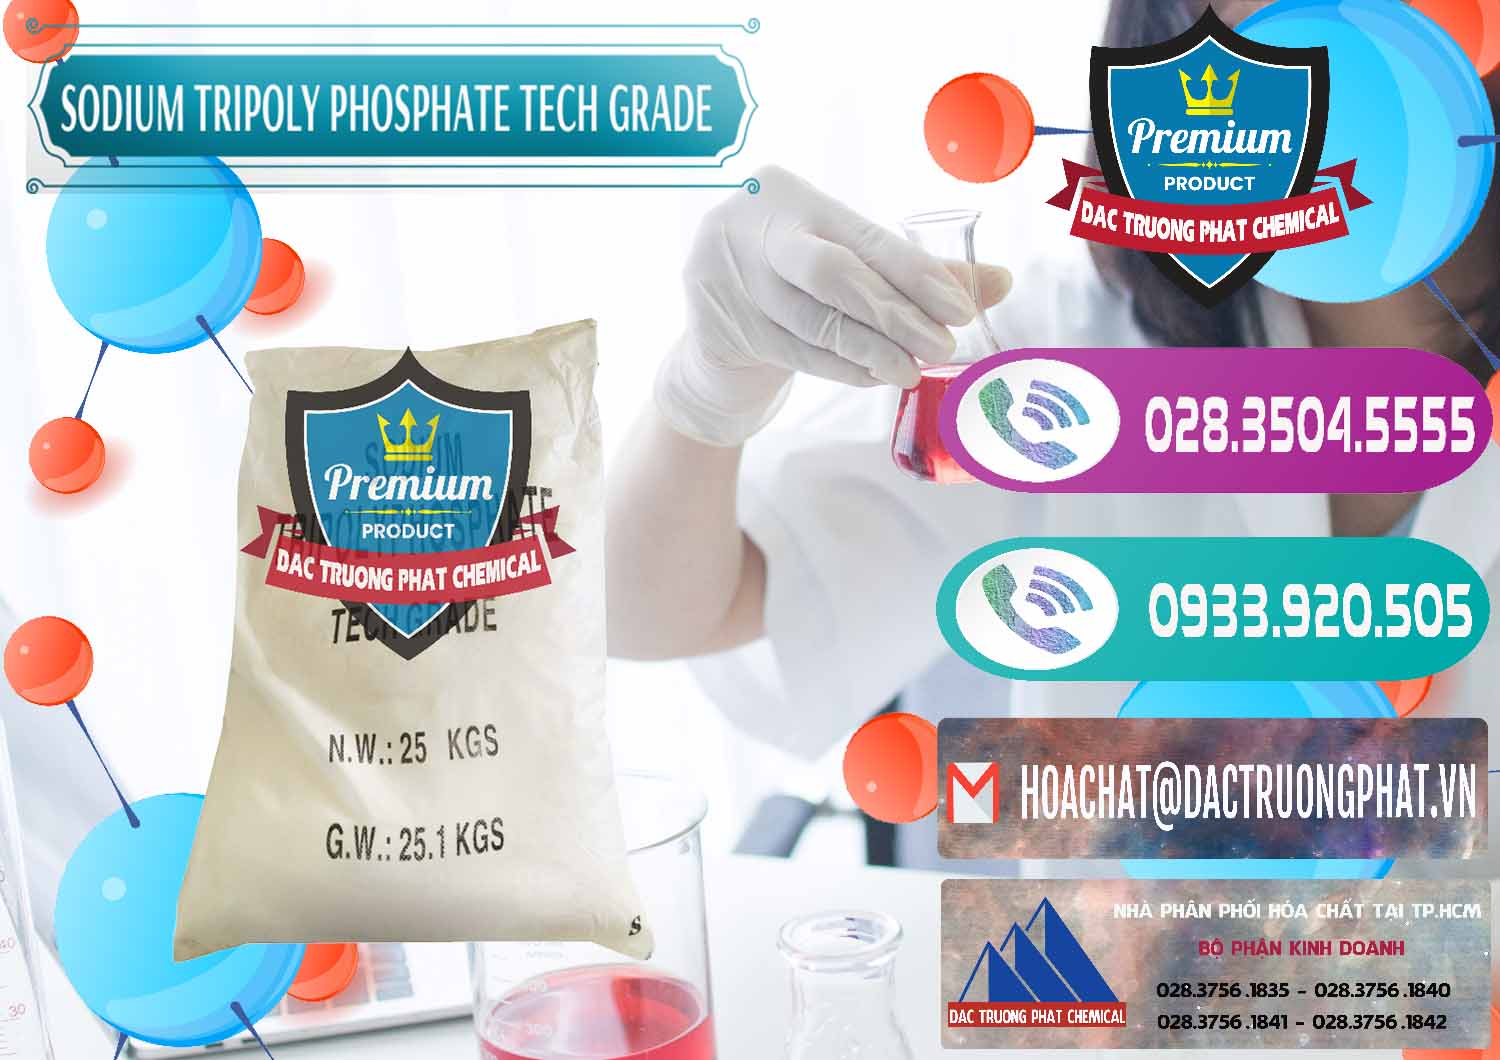 Cty bán _ cung cấp Sodium Tripoly Phosphate - STPP Tech Grade Trung Quốc China - 0453 - Nhà nhập khẩu và phân phối hóa chất tại TP.HCM - hoachatxulynuoc.com